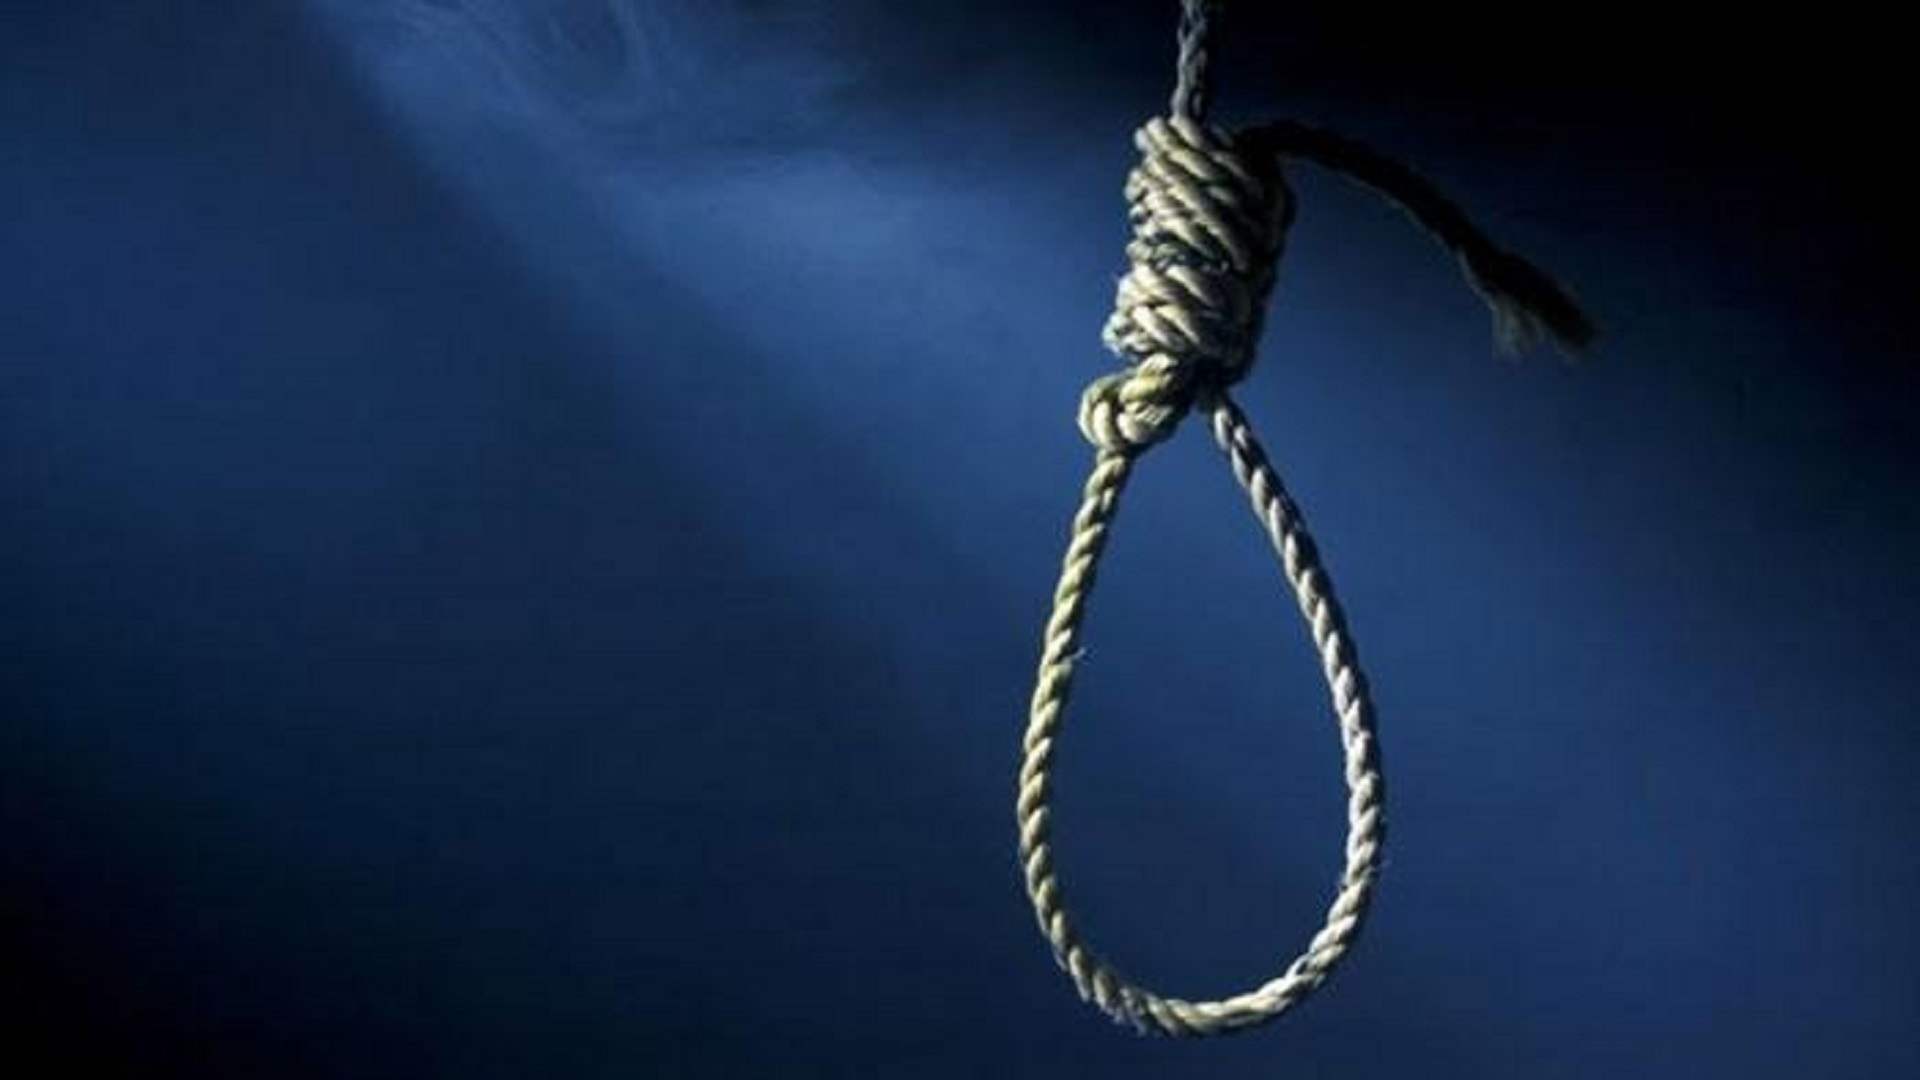 إعدام شخصين في إيران لادانتهما بإهانة المقدسات الإسلامية